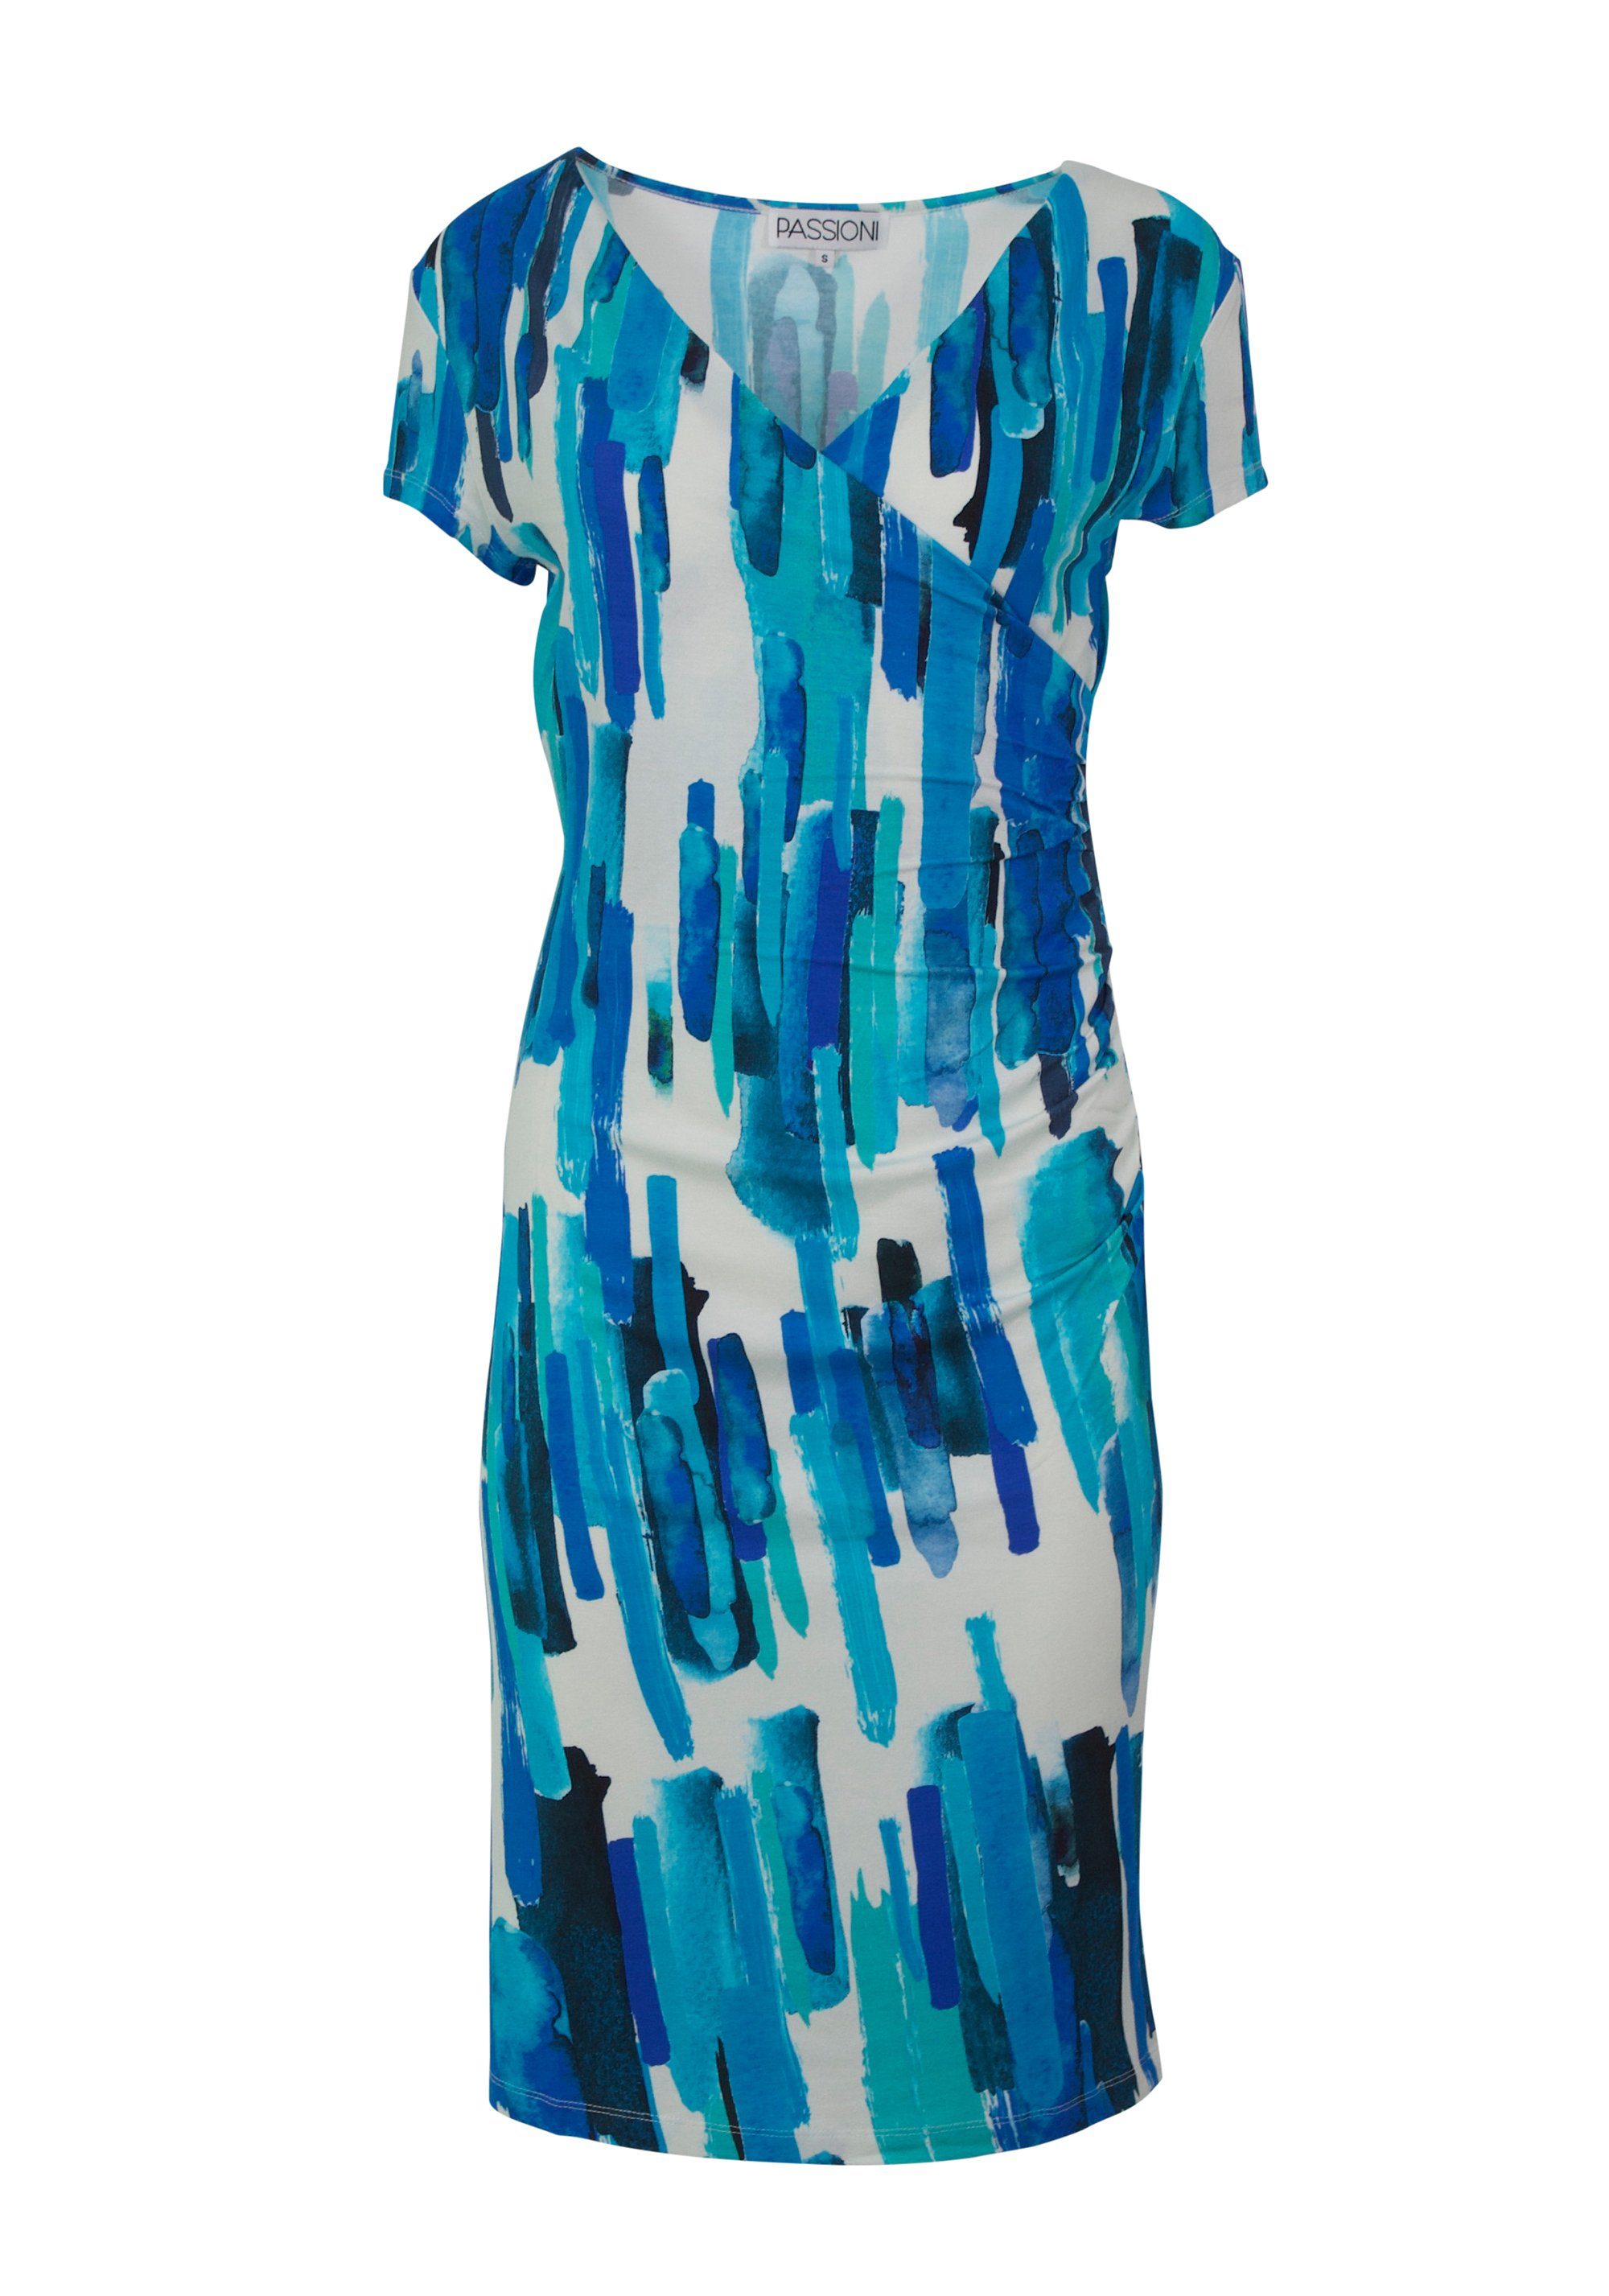 Damen Kleider Passioni Druckkleid Kleid mit grafischen Druck mit Print